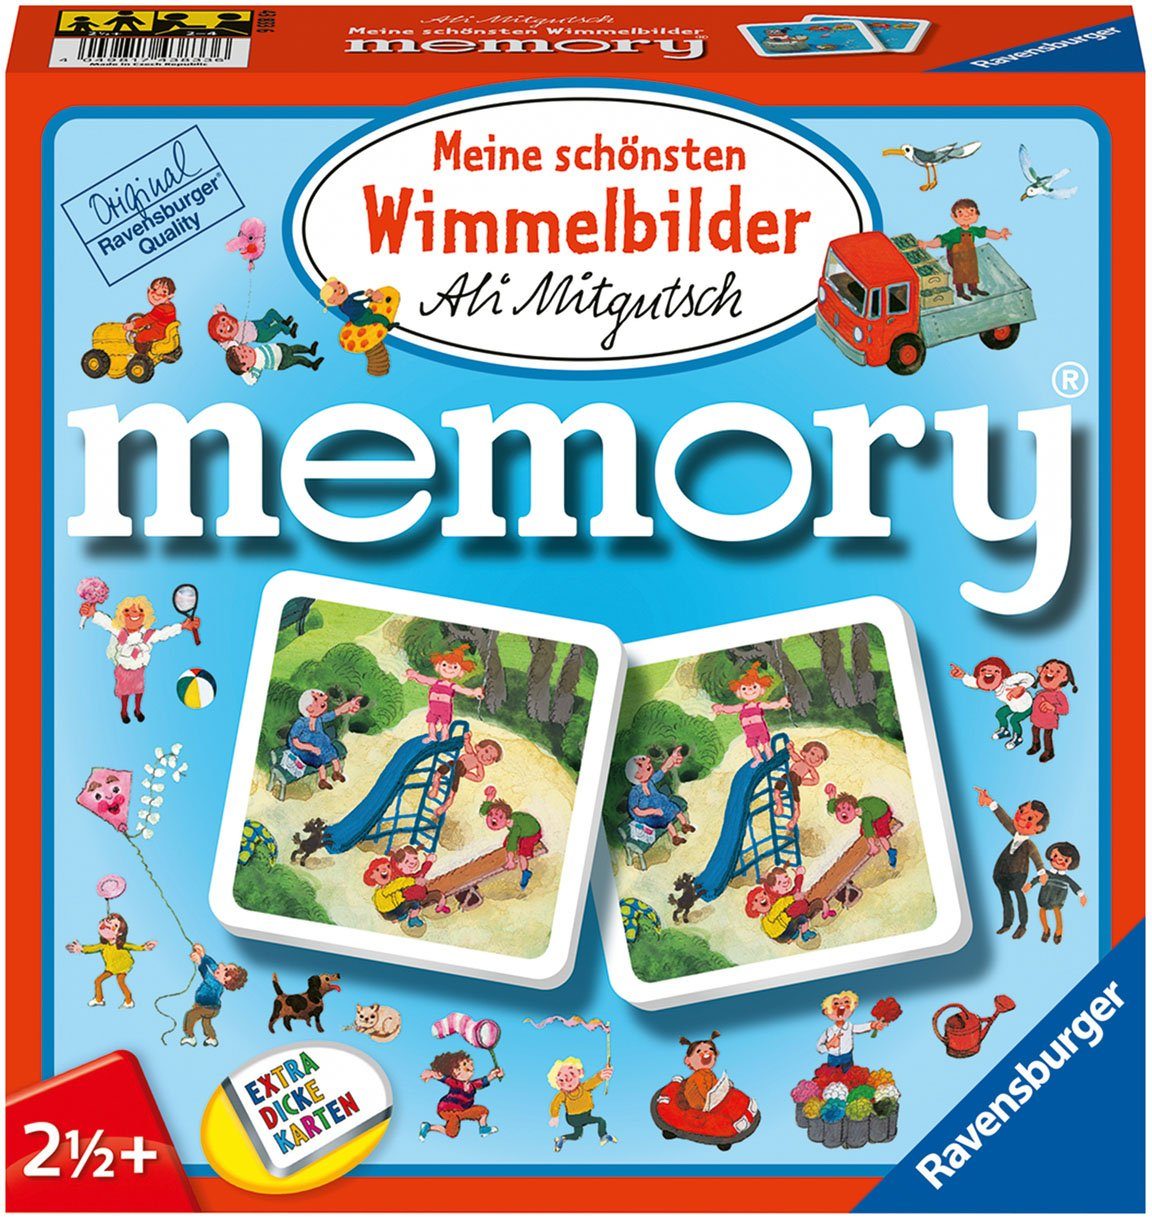 Ravensburger Spiel, Kinderspiel Meine schönsten Wimmelbilder memory®, FSC® - schützt Wald - weltweit; Made in Europe